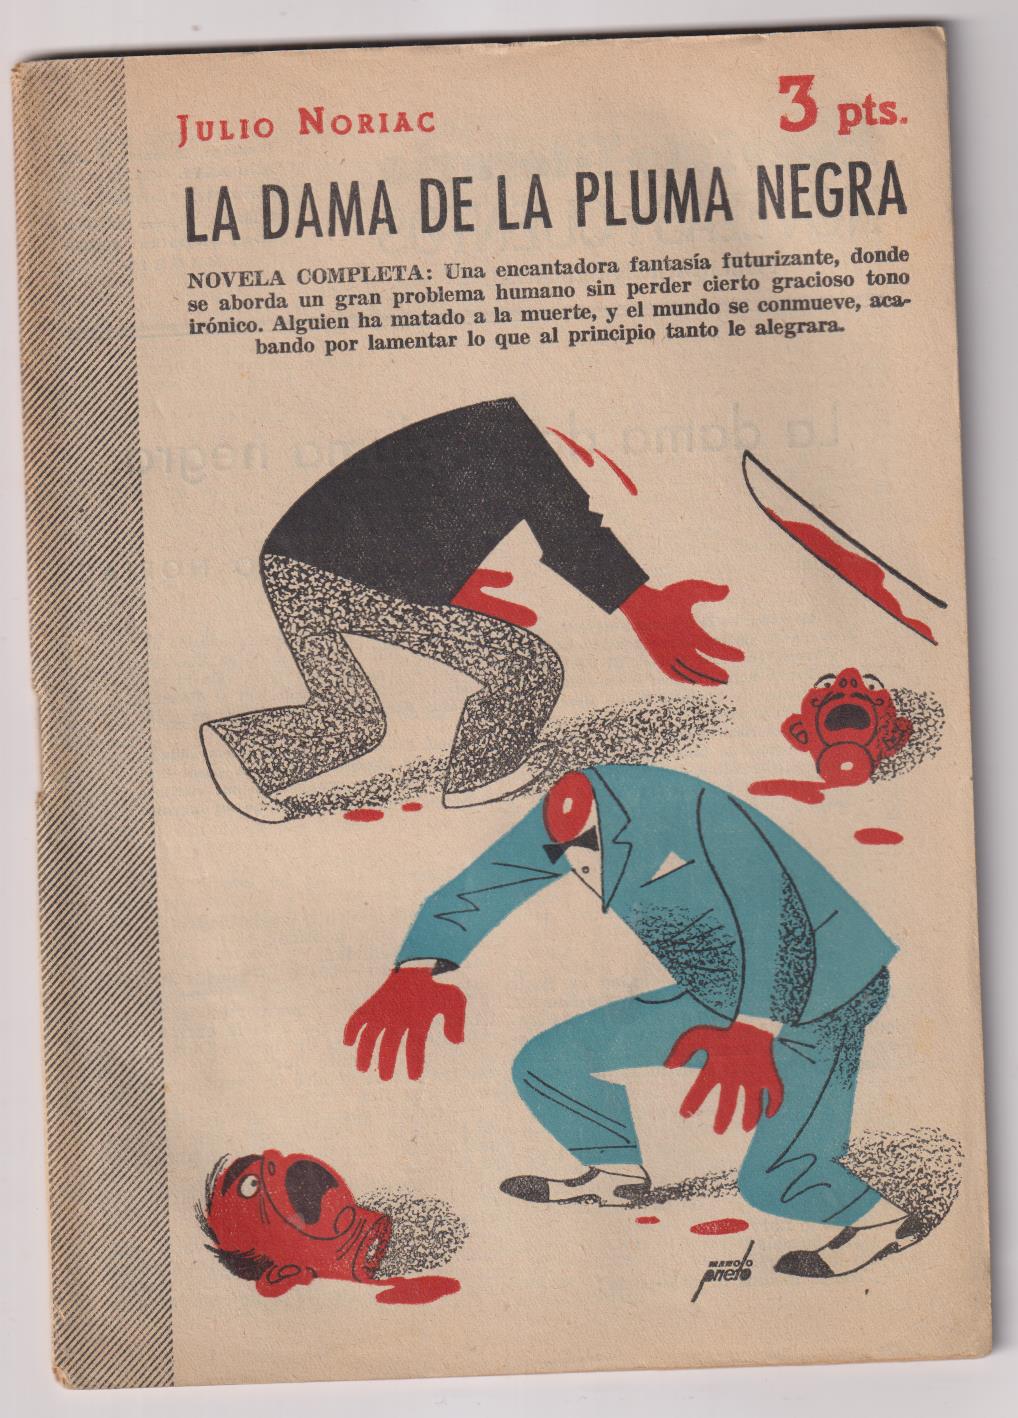 Revista Literaria Novelas y Cuentos nº 1203. Julio Noriac. La Dama de la pluma negra, 1954